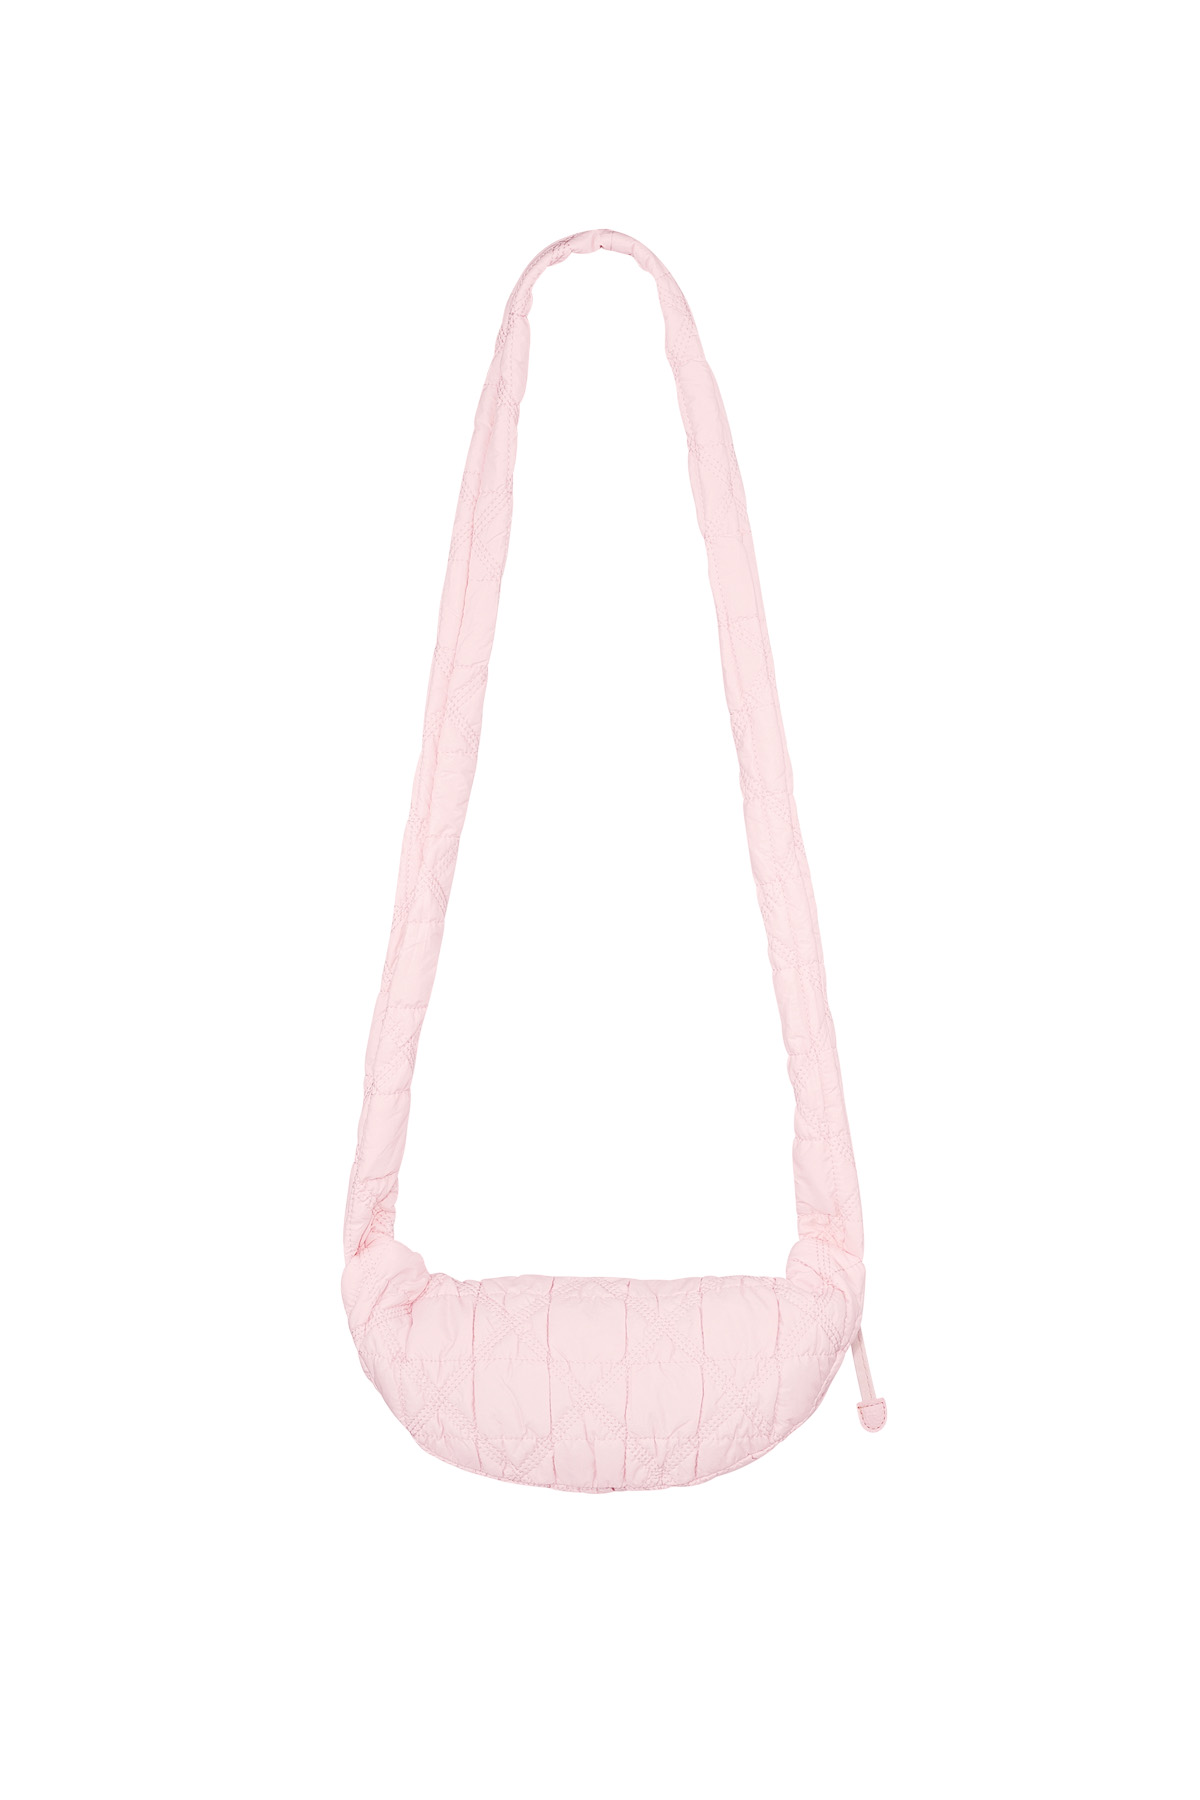 Lange Wolkentasche – rosa Bild2